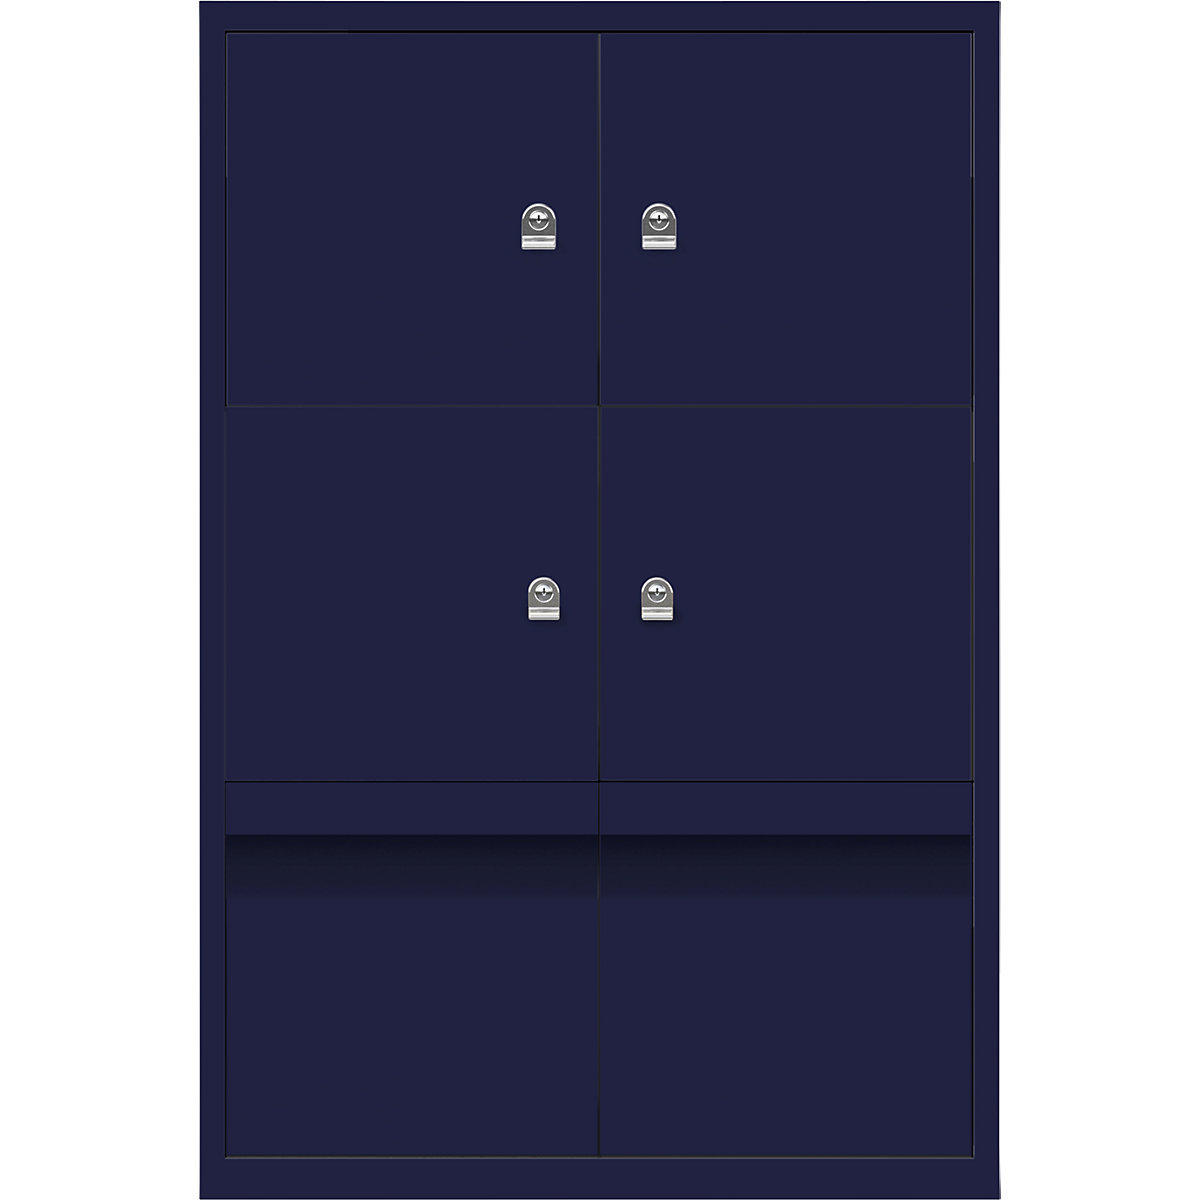 Ormar LateralFile™ Lodge – BISLEY, s 4 pretinca sa zaključavanjem i 2 ladice, visina po 375 mm, u oxford plavoj boji-17